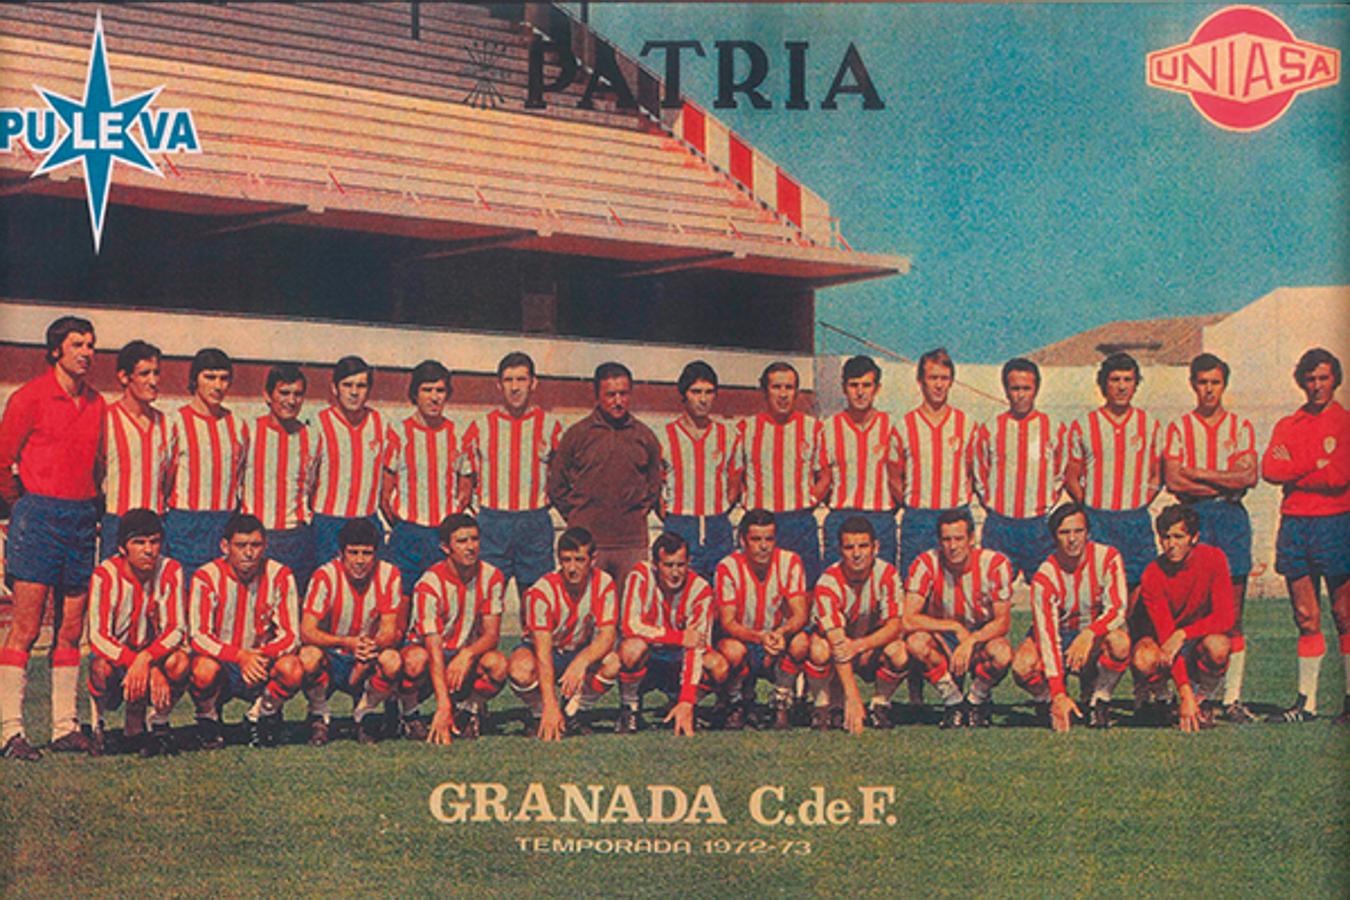 1972. PULEVA A PRIMERA CON EL GRANADA.El equipo del Granada Club de Fútbol, con PULEVA como principal patrocinador de la temporada 1972.73, en Primera División. 